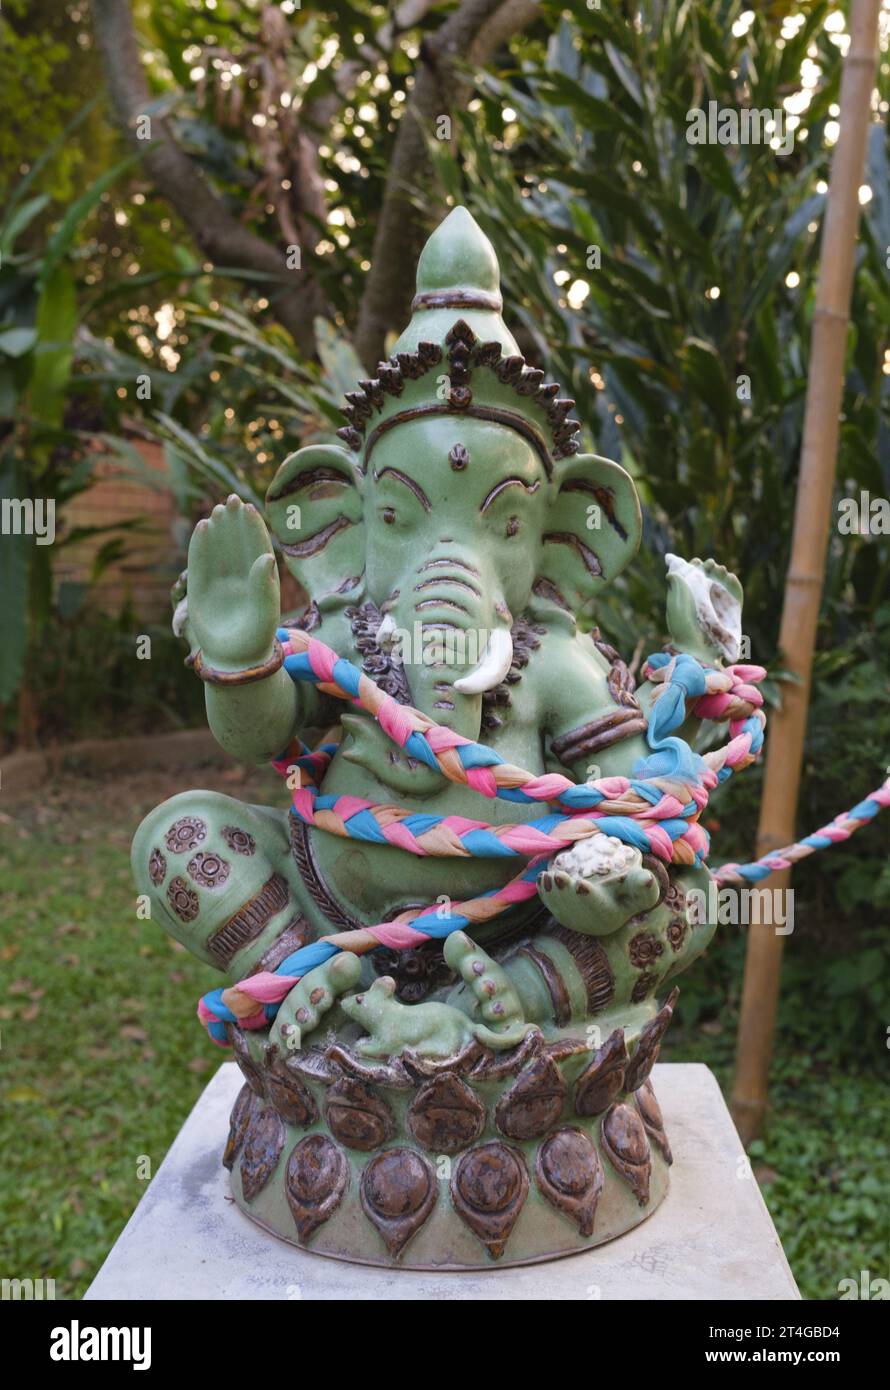 Thaïlande : une statue du dieu hindou Ganesh dans le jardin d'une grande maison privée à côté de la rivière Ping, Chiang Mai. Ganesha, également orthographié Ganesa ou Ganesh, et également connu sous le nom de Ganapati, Vinayaka et Pillaiyar, est l'une des divinités les plus connues et les plus vénérées du panthéon hindou. Son image se retrouve partout en Inde et au Népal. Les sectes hindoues le vénèrent indépendamment de ses affiliations. La dévotion à Ganesha est largement diffusée et s'étend aux jaïns, aux bouddhistes et au-delà de l'Inde. Banque D'Images